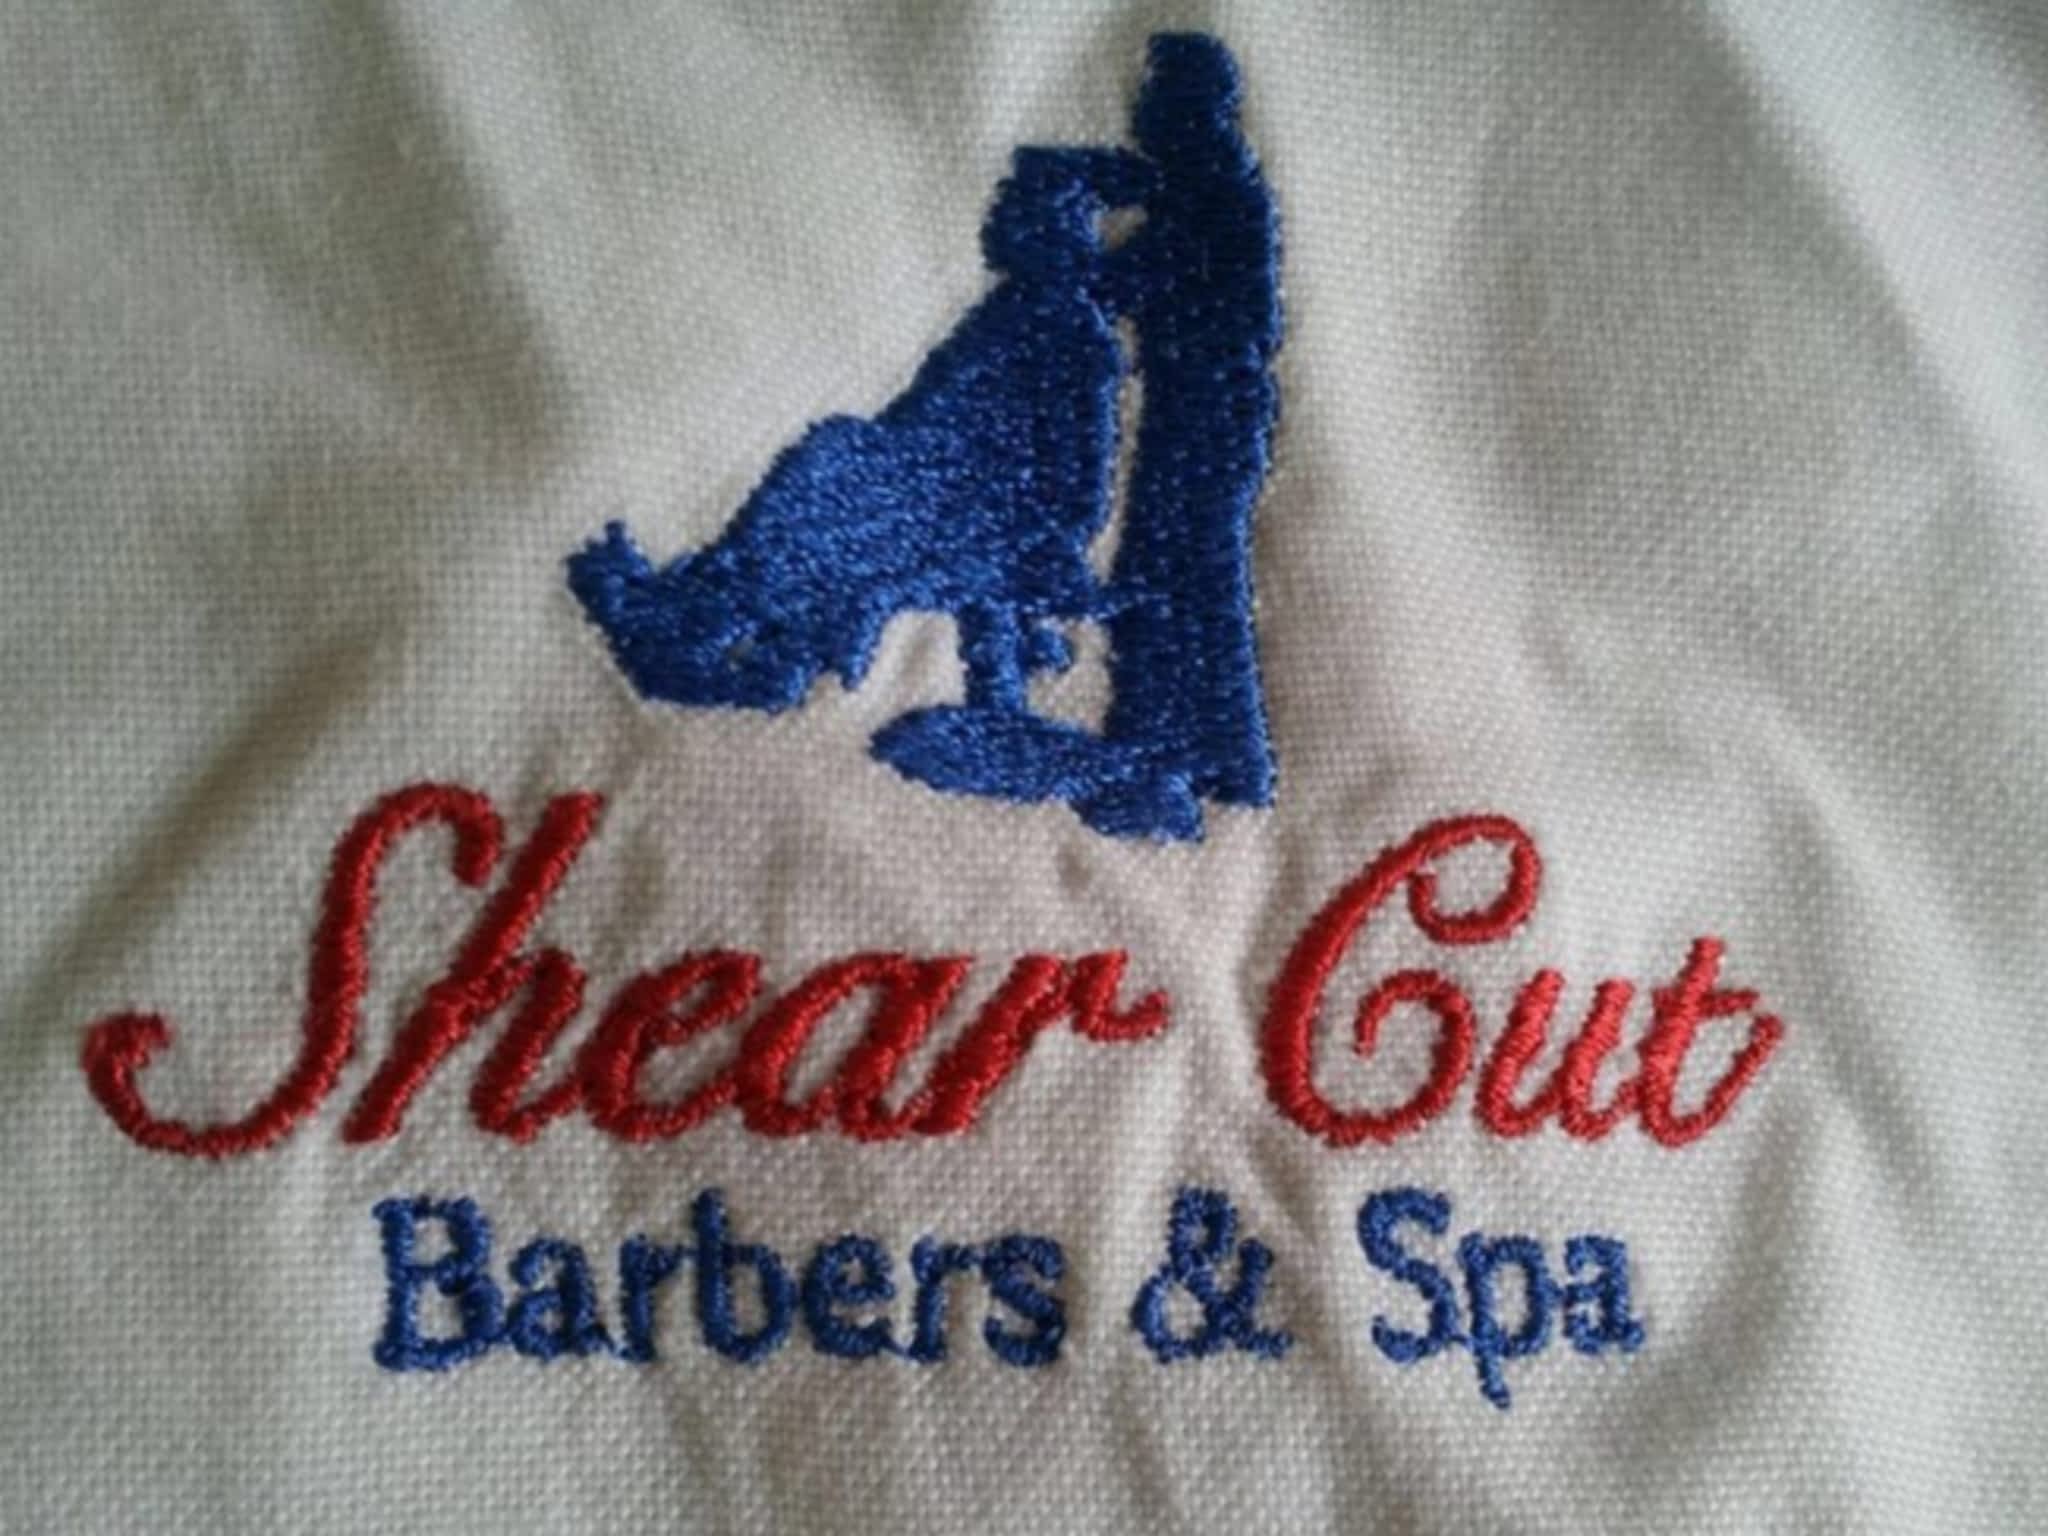 photo Shear Cut Barbers & Salon